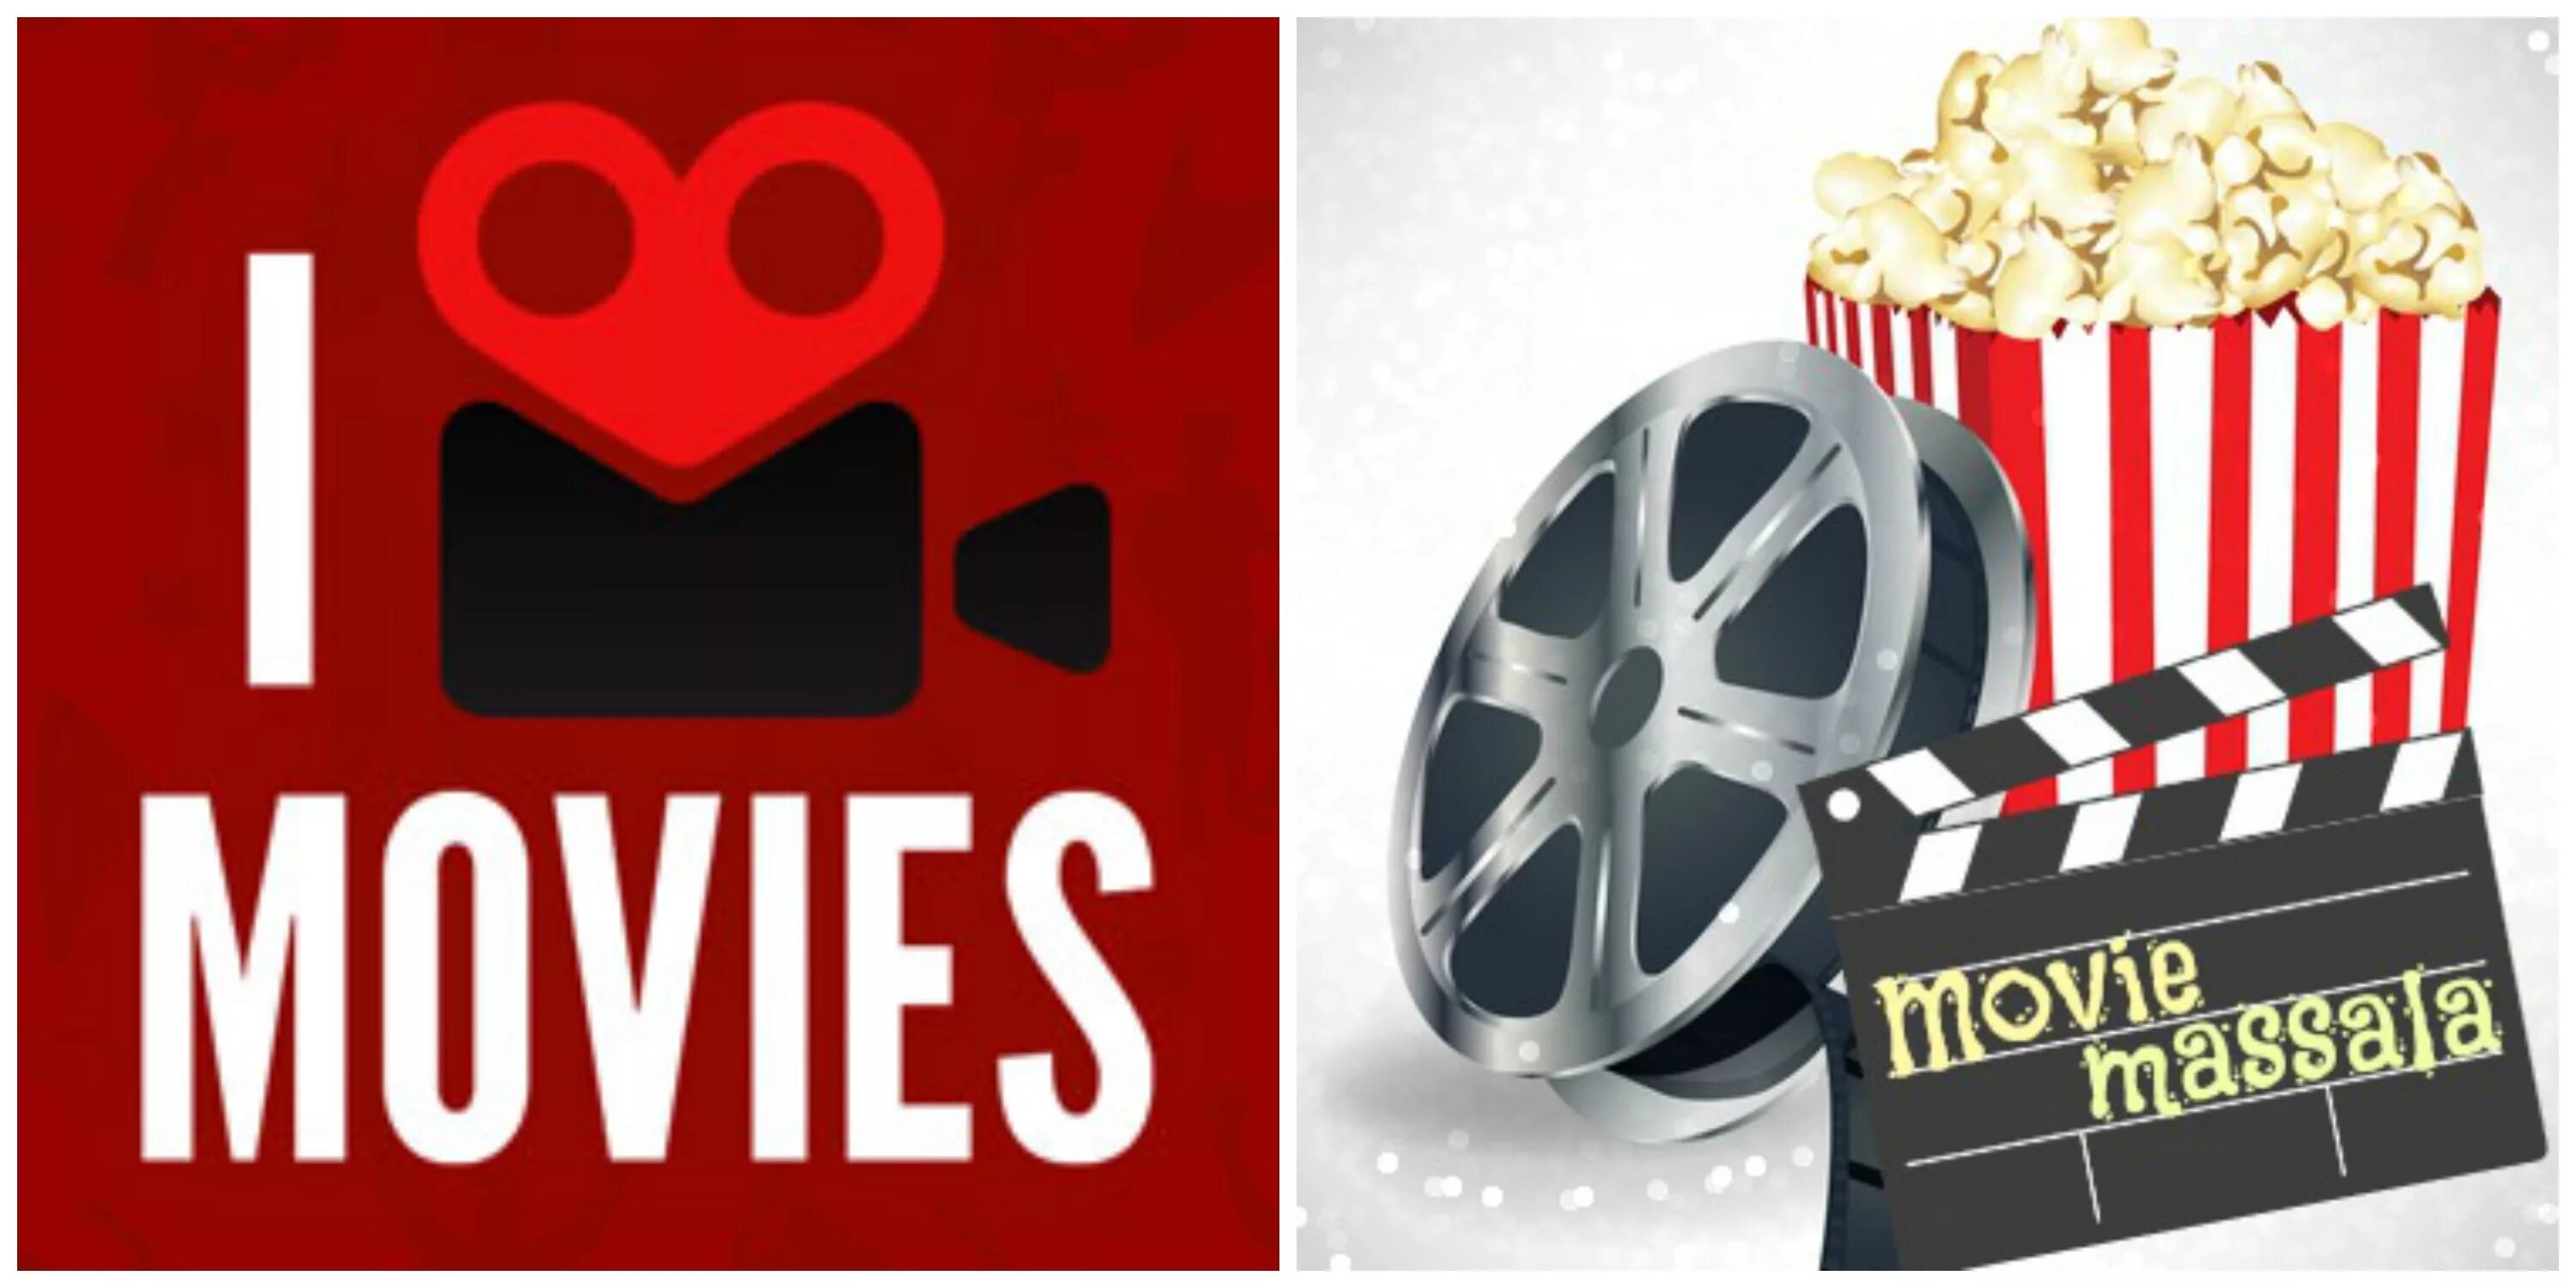 Make movies like the movies. Movie Parts. Movie logo.